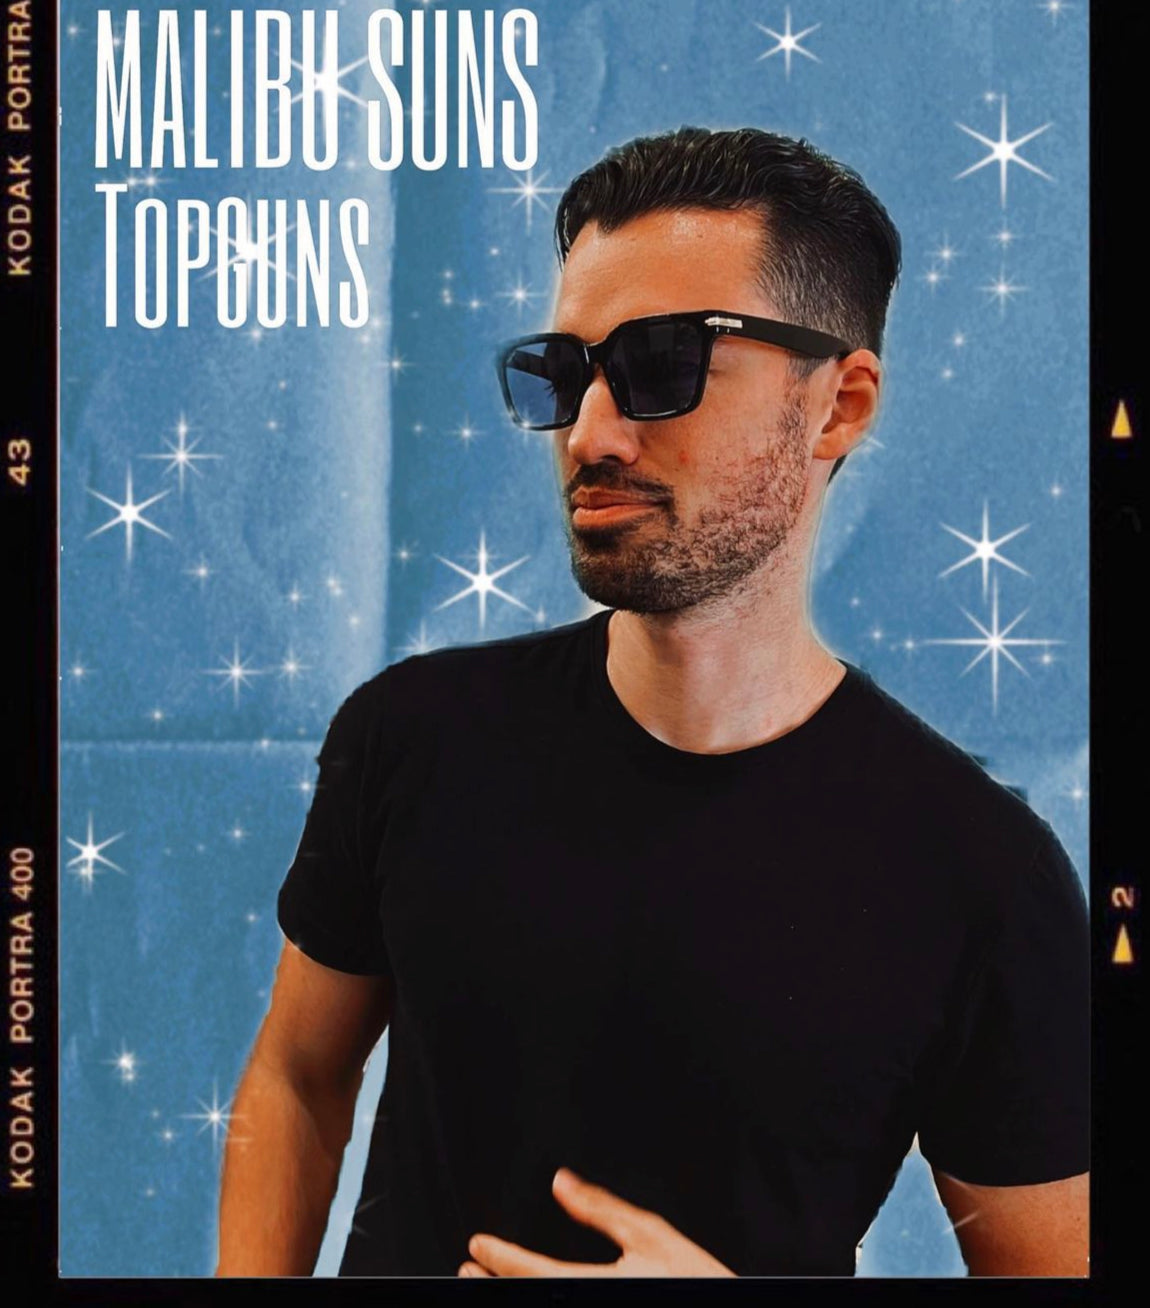 Top Guns by Malibu Suns